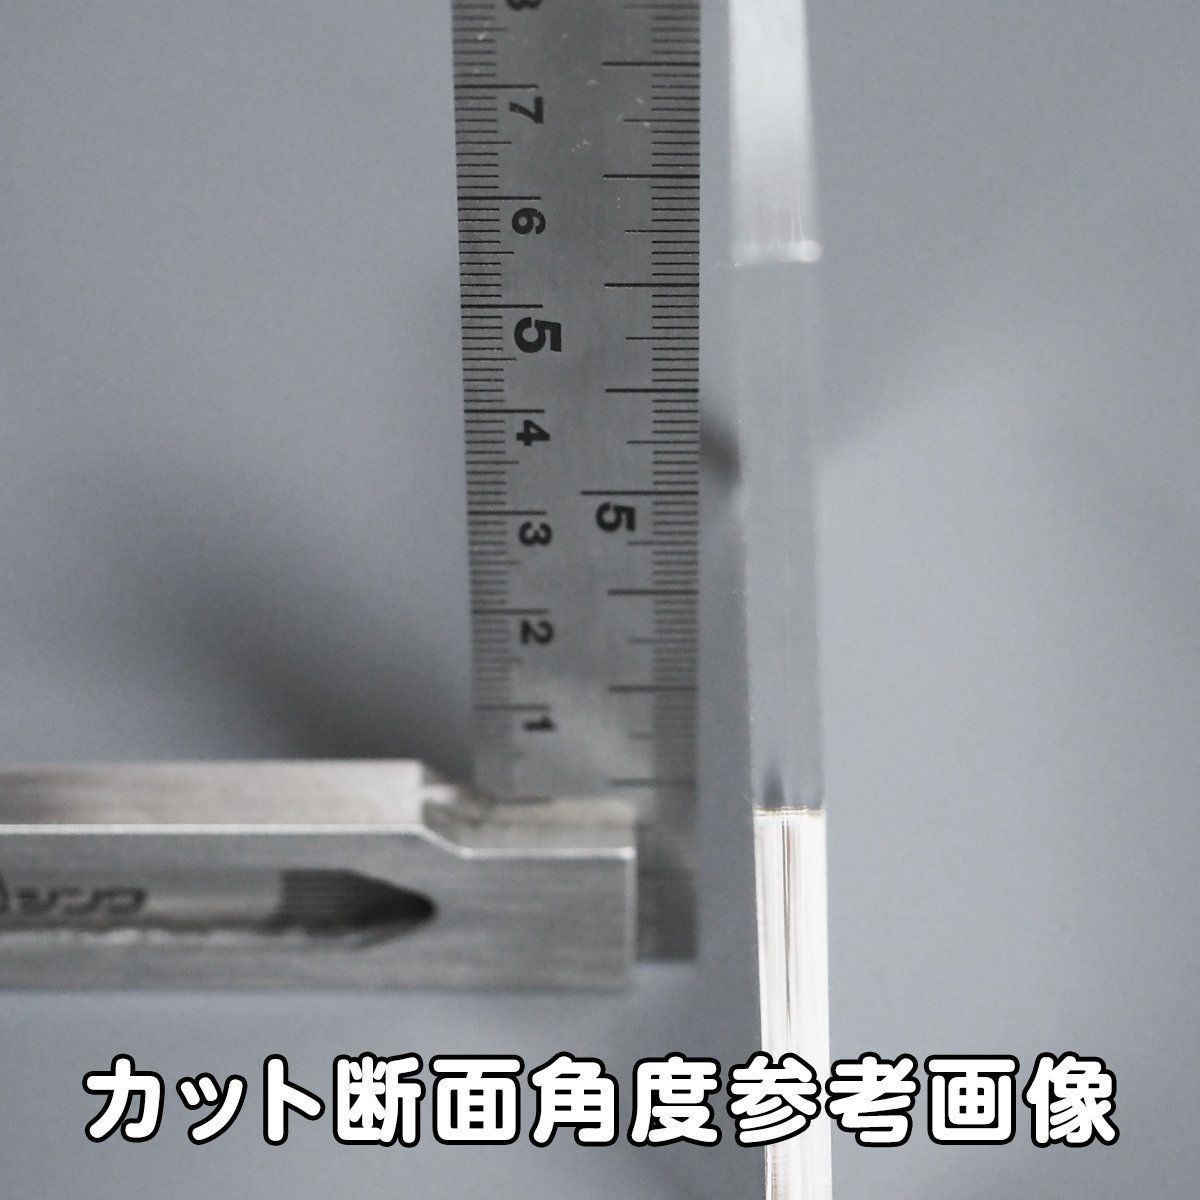 透明 アクリル 5mm厚 正方形 8cm 4個セット - メルカリ